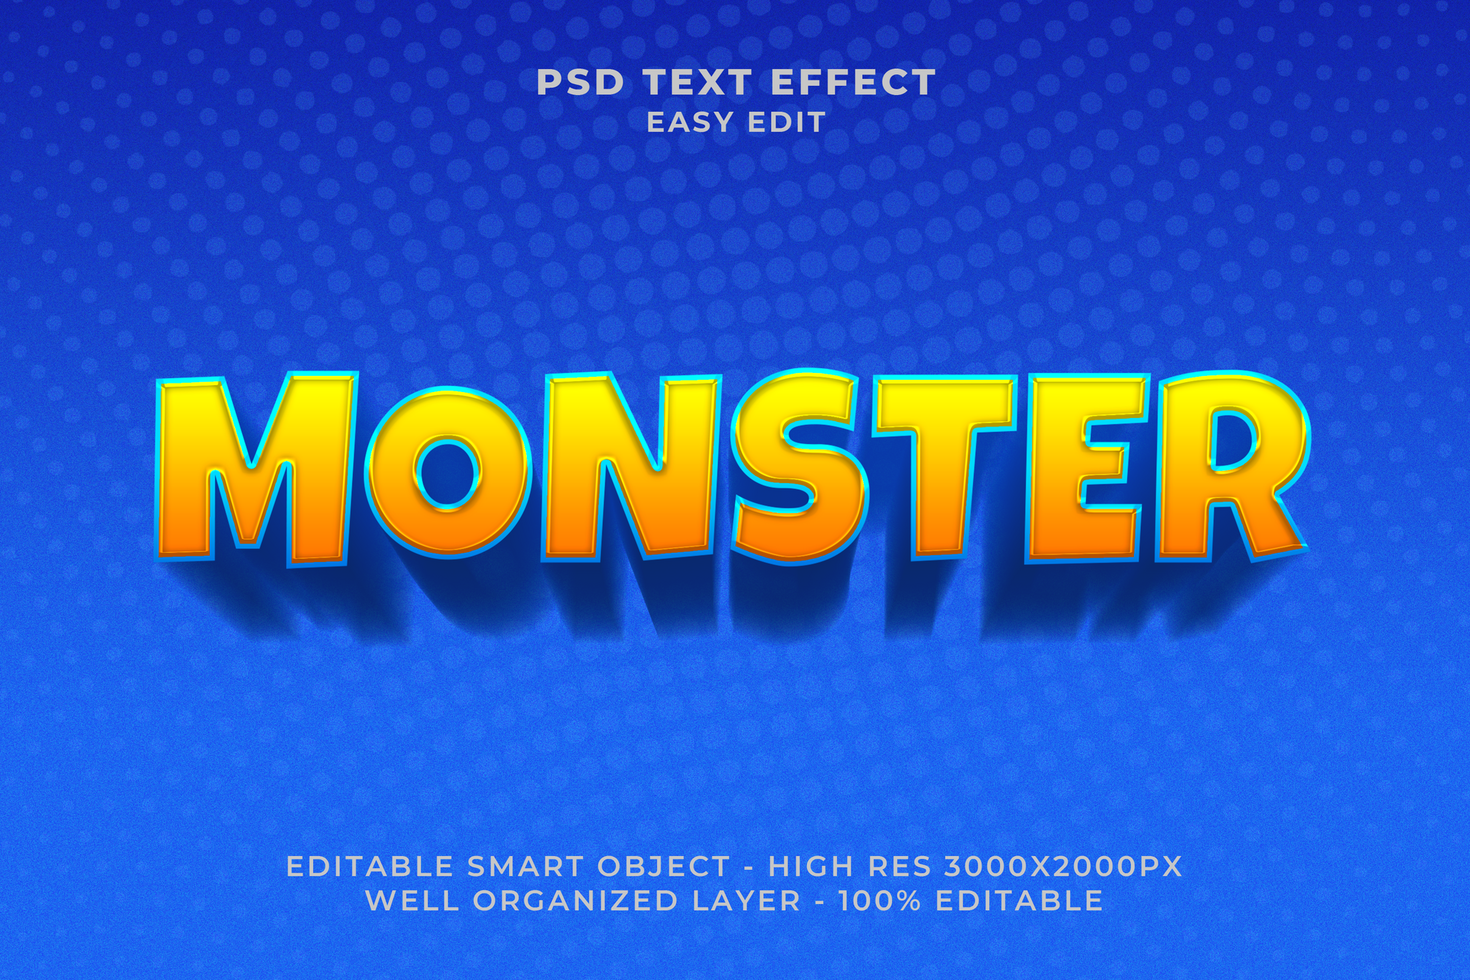 Monster text effect psd